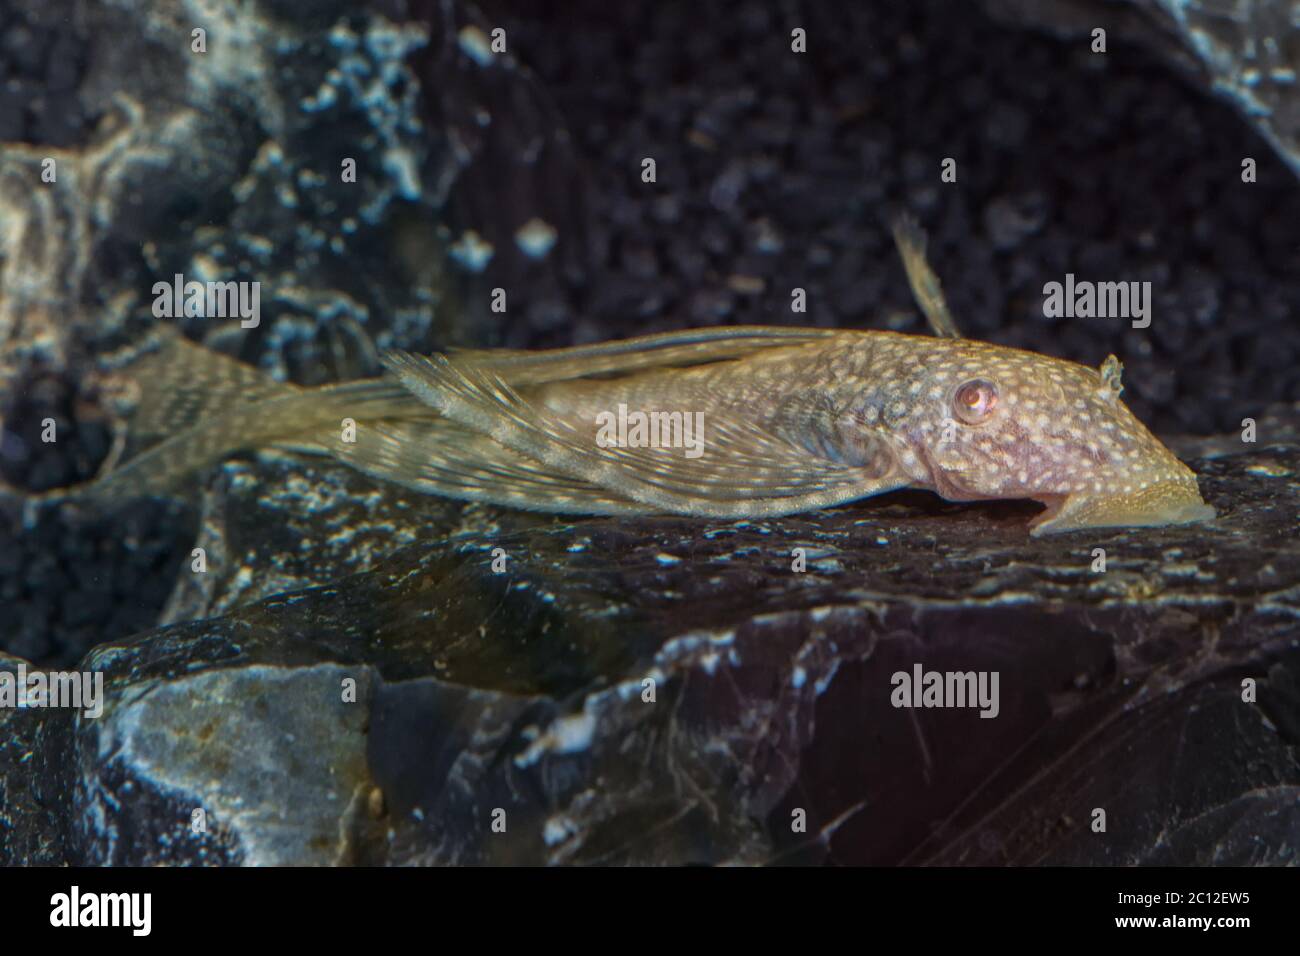 Portrait of catfish (Ancistrus sp.) in aquarium Stock Photo